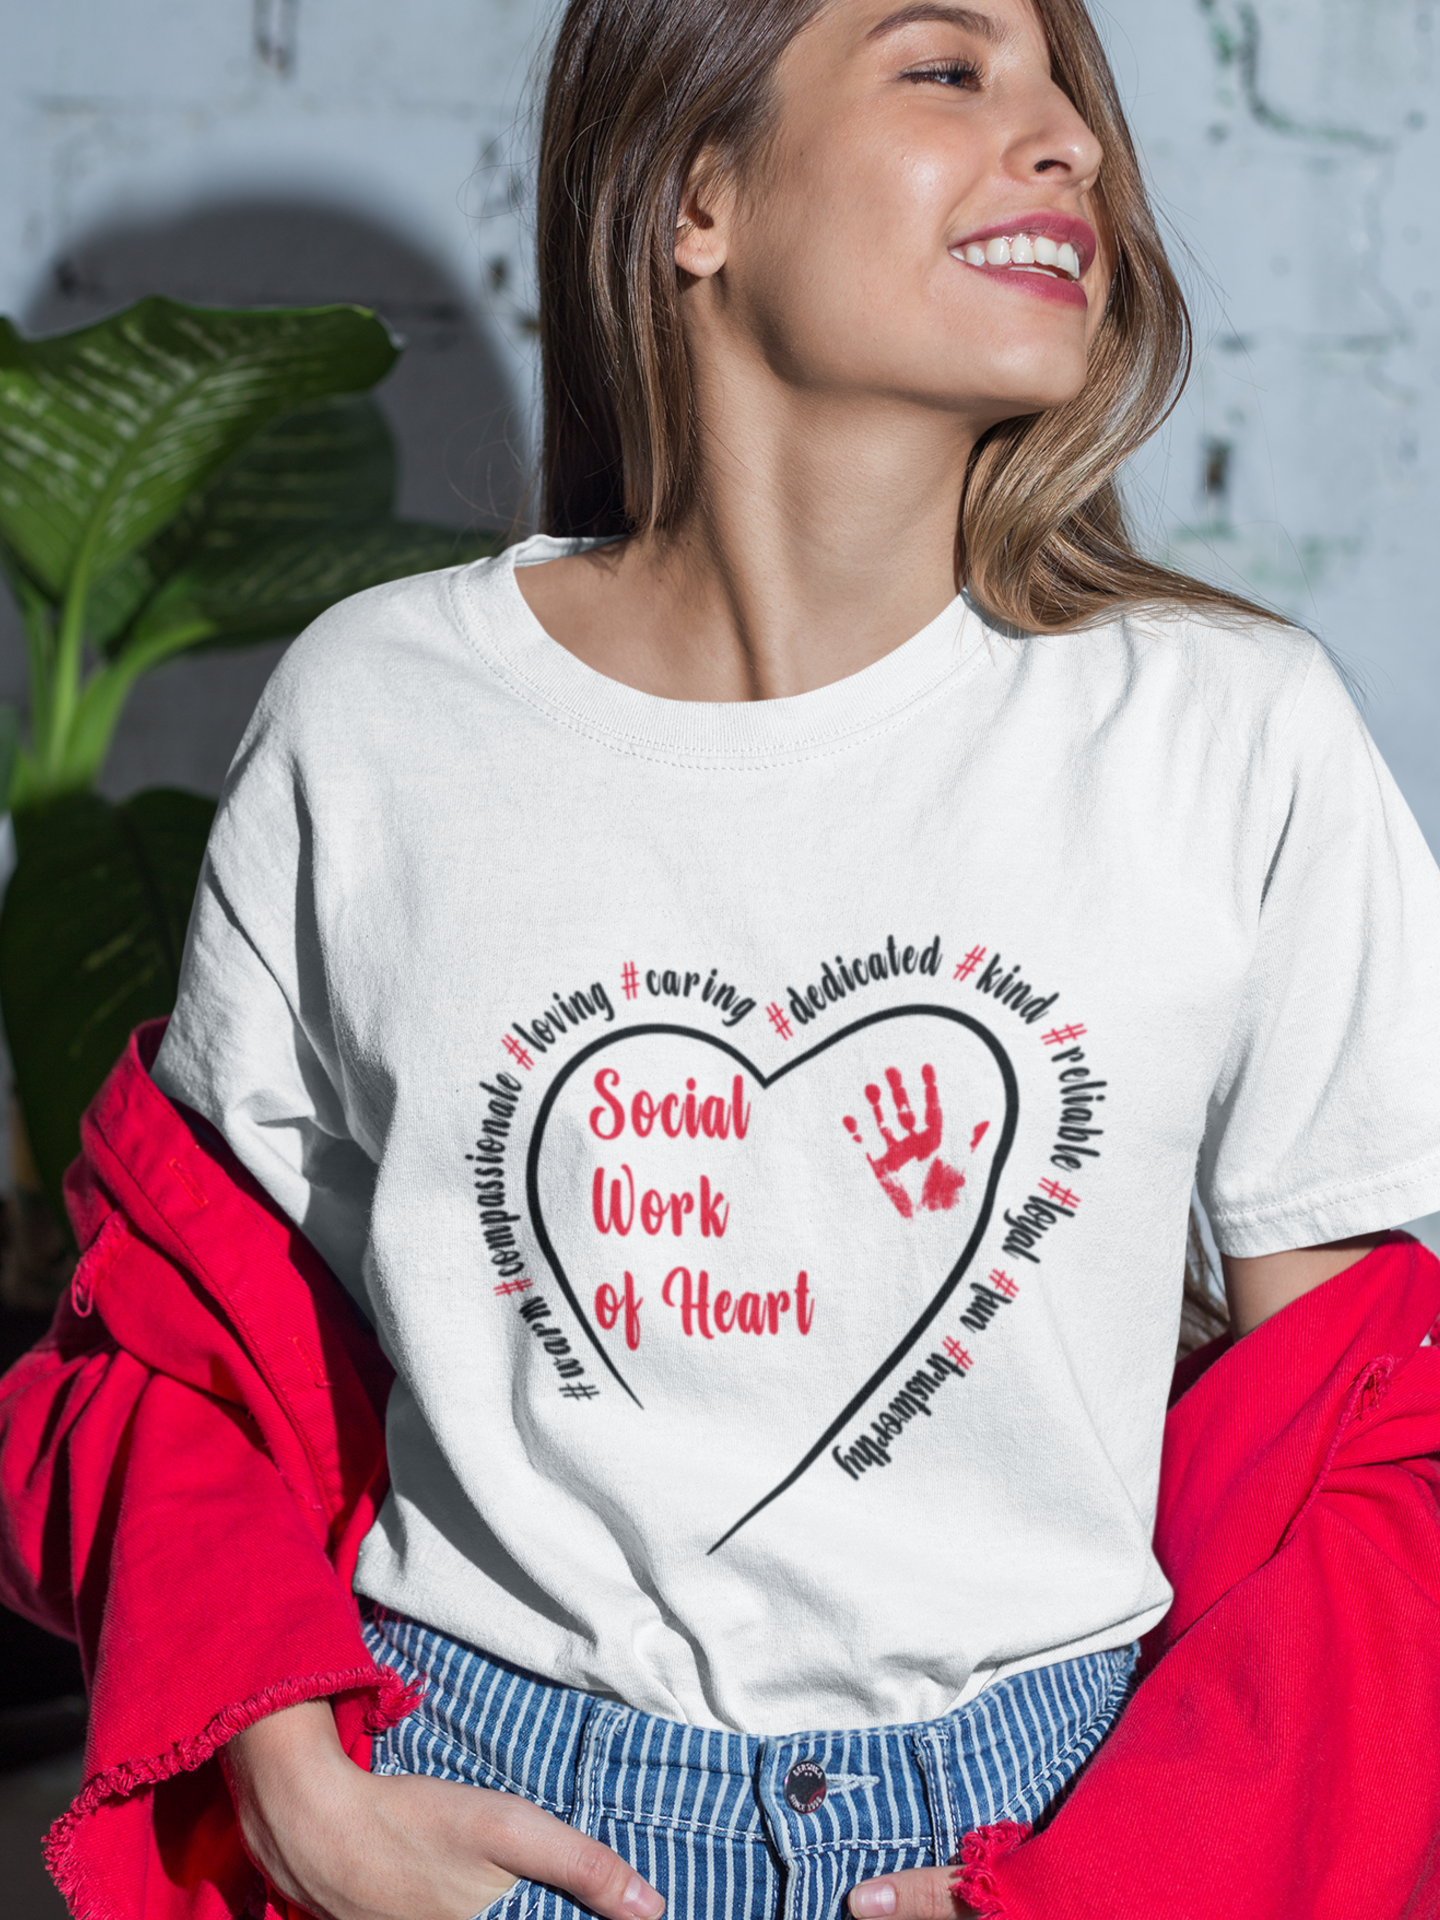 Social work of heart T shirt